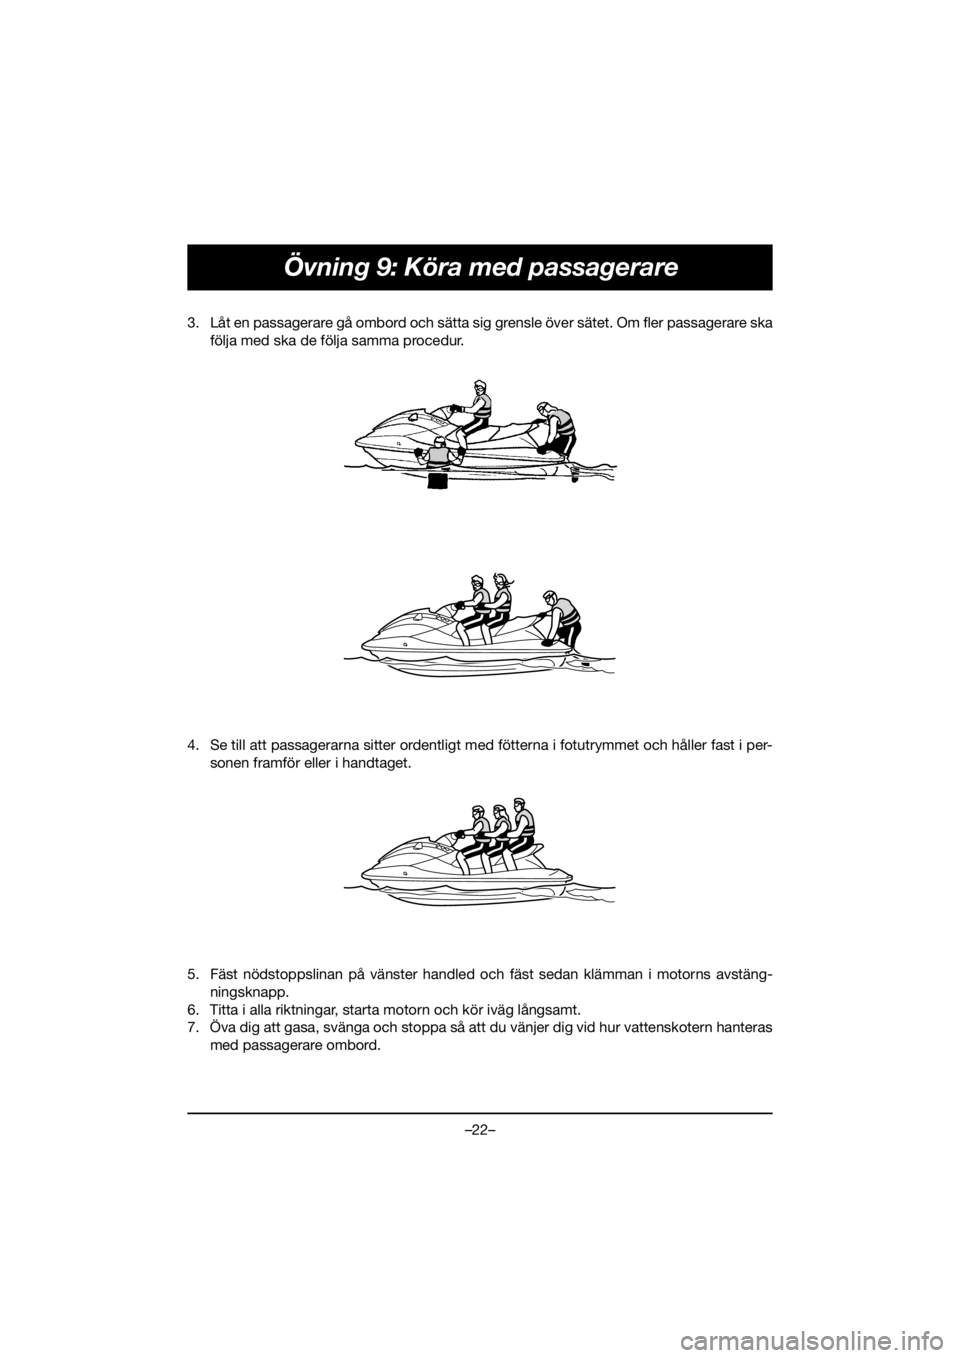 YAMAHA VX CRUISER HO 2020  Manuale duso (in Italian) –22–
Övning 9: Köra med passagerare
3. Låt en passagerare gå ombord och sätta sig grensle över sätet. Om fler passagerare ska
följa med ska de följa samma procedur. 
4. Se till att passag